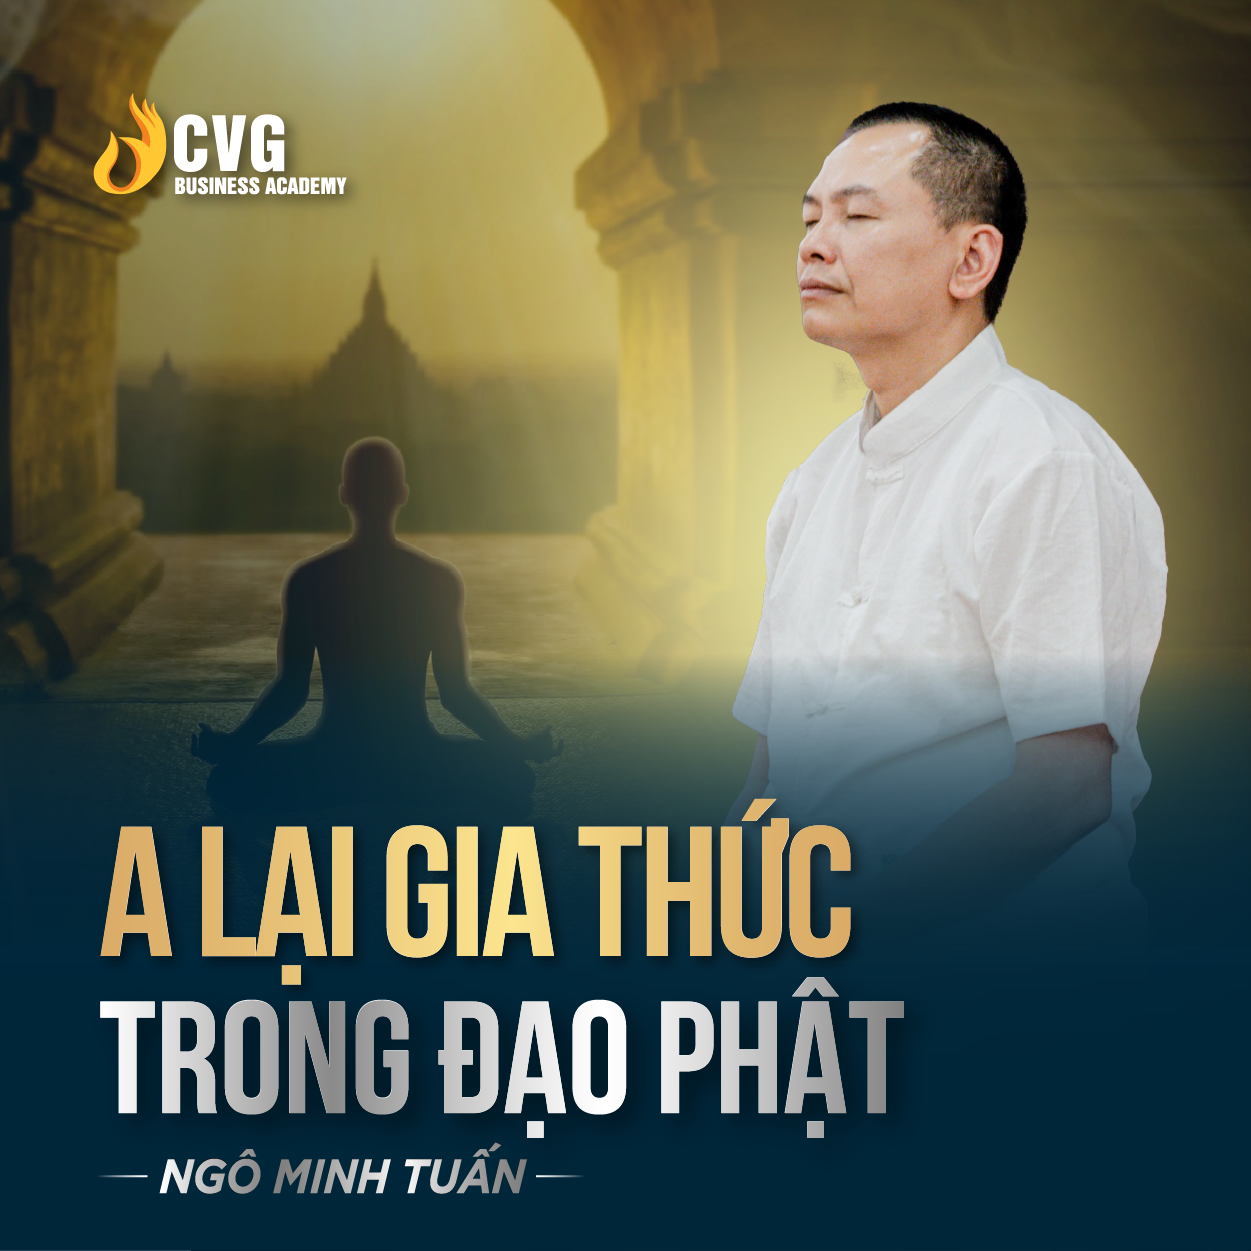 A LẠI DA THỨC TRONG ĐẠO PHẬT | Ngô Minh Tuấn | Học Viện CEO Việt Nam Global